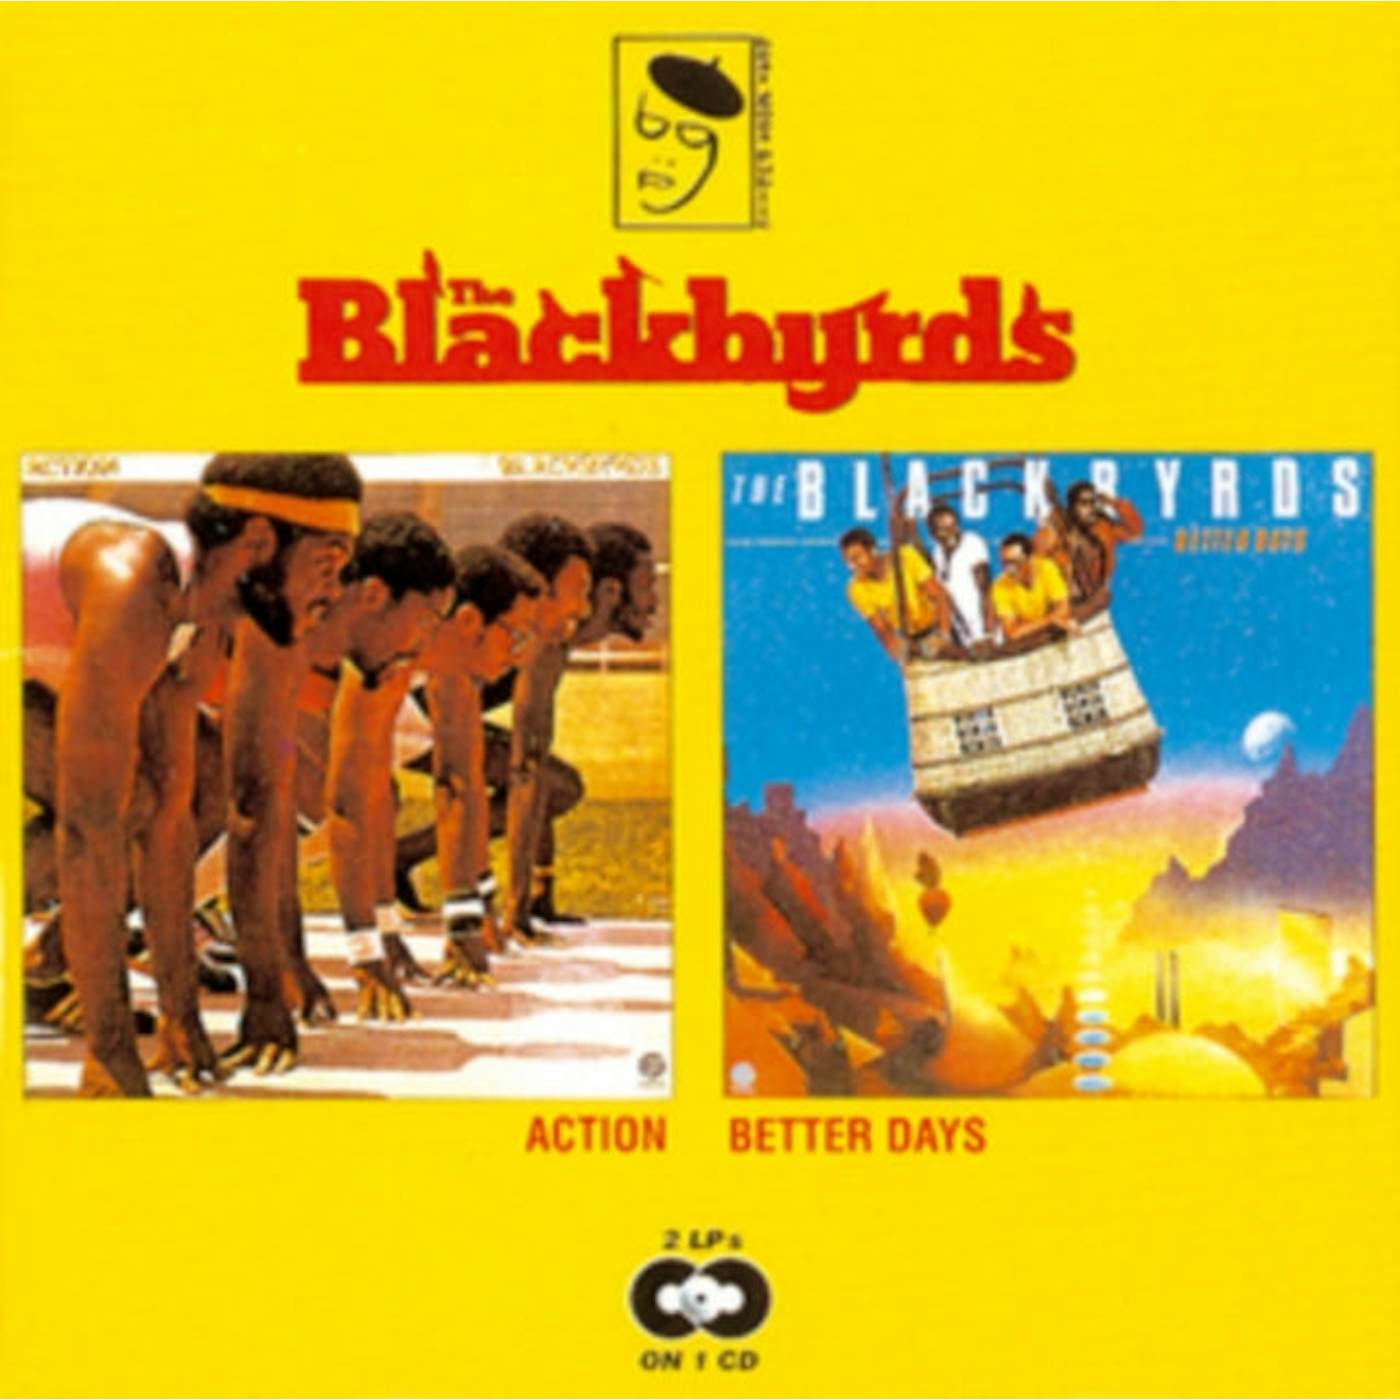 The Blackbyrds CD - Action Better Days